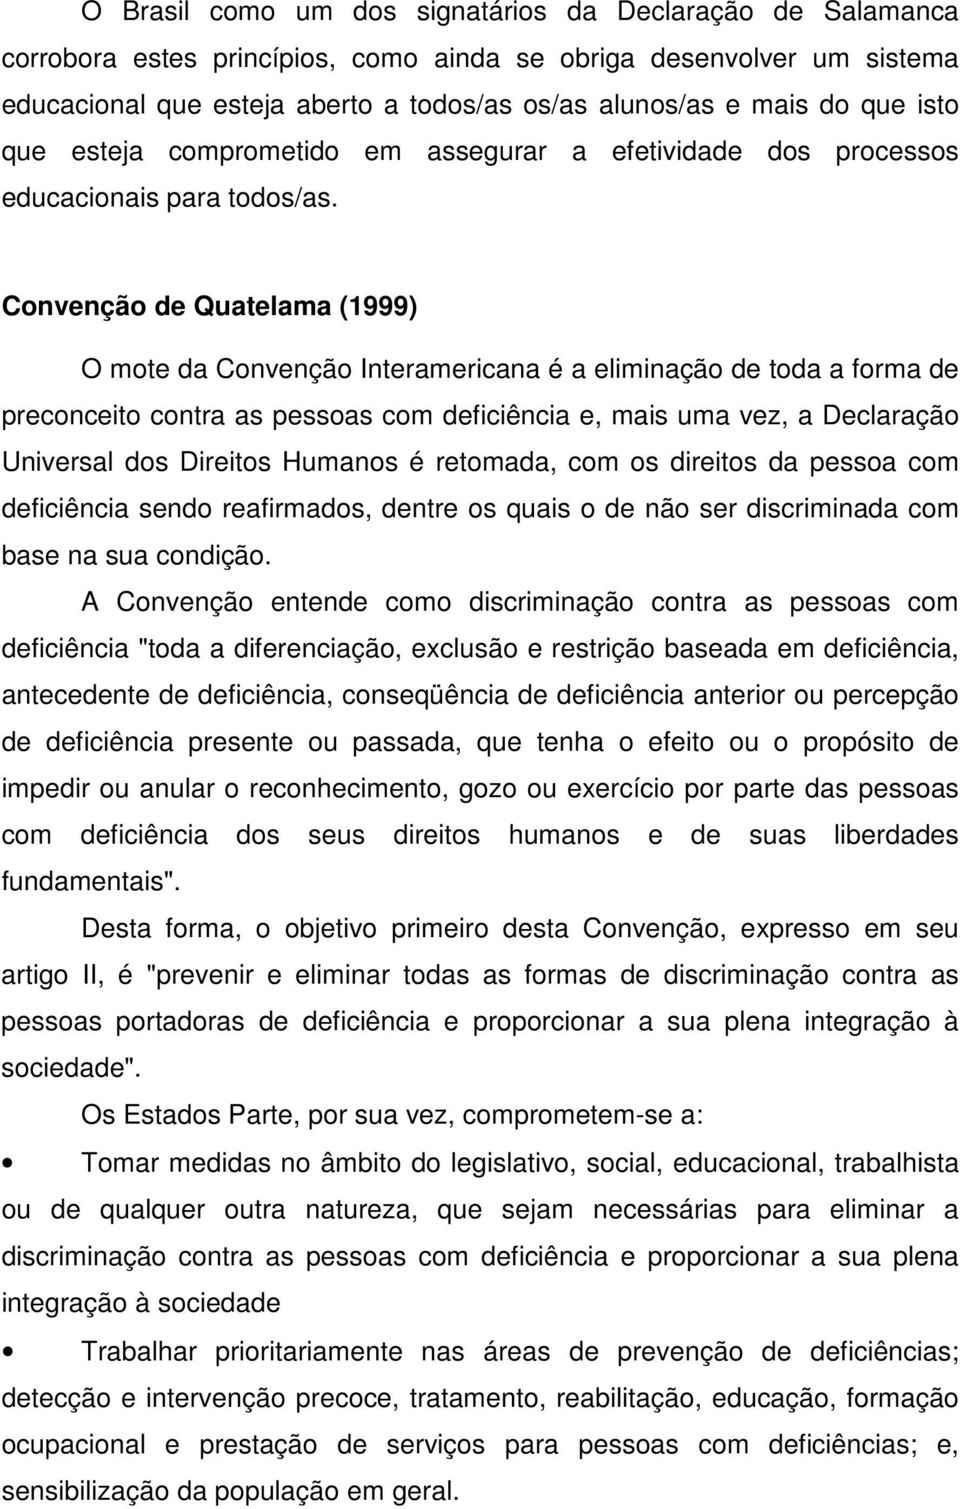 Convenção de Quatelama (1999) O mote da Convenção Interamericana é a eliminação de toda a forma de preconceito contra as pessoas com deficiência e, mais uma vez, a Declaração Universal dos Direitos